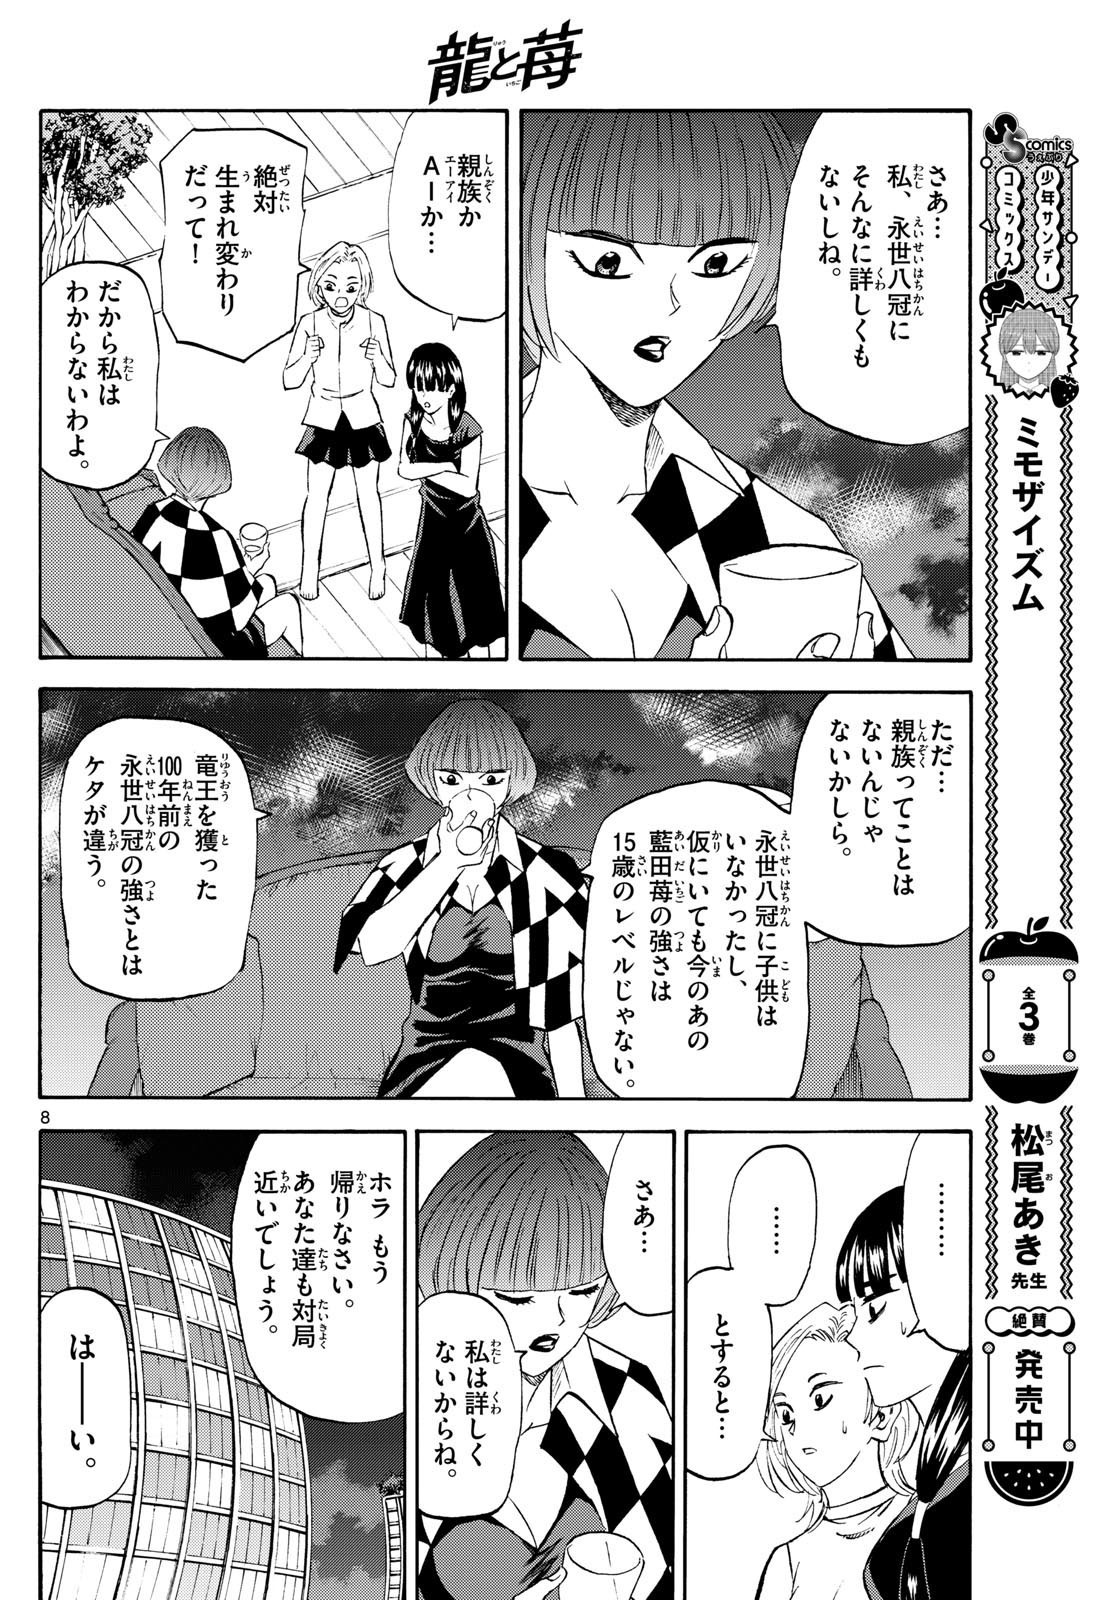 Ryu-to-Ichigo - Chapter 199 - Page 8